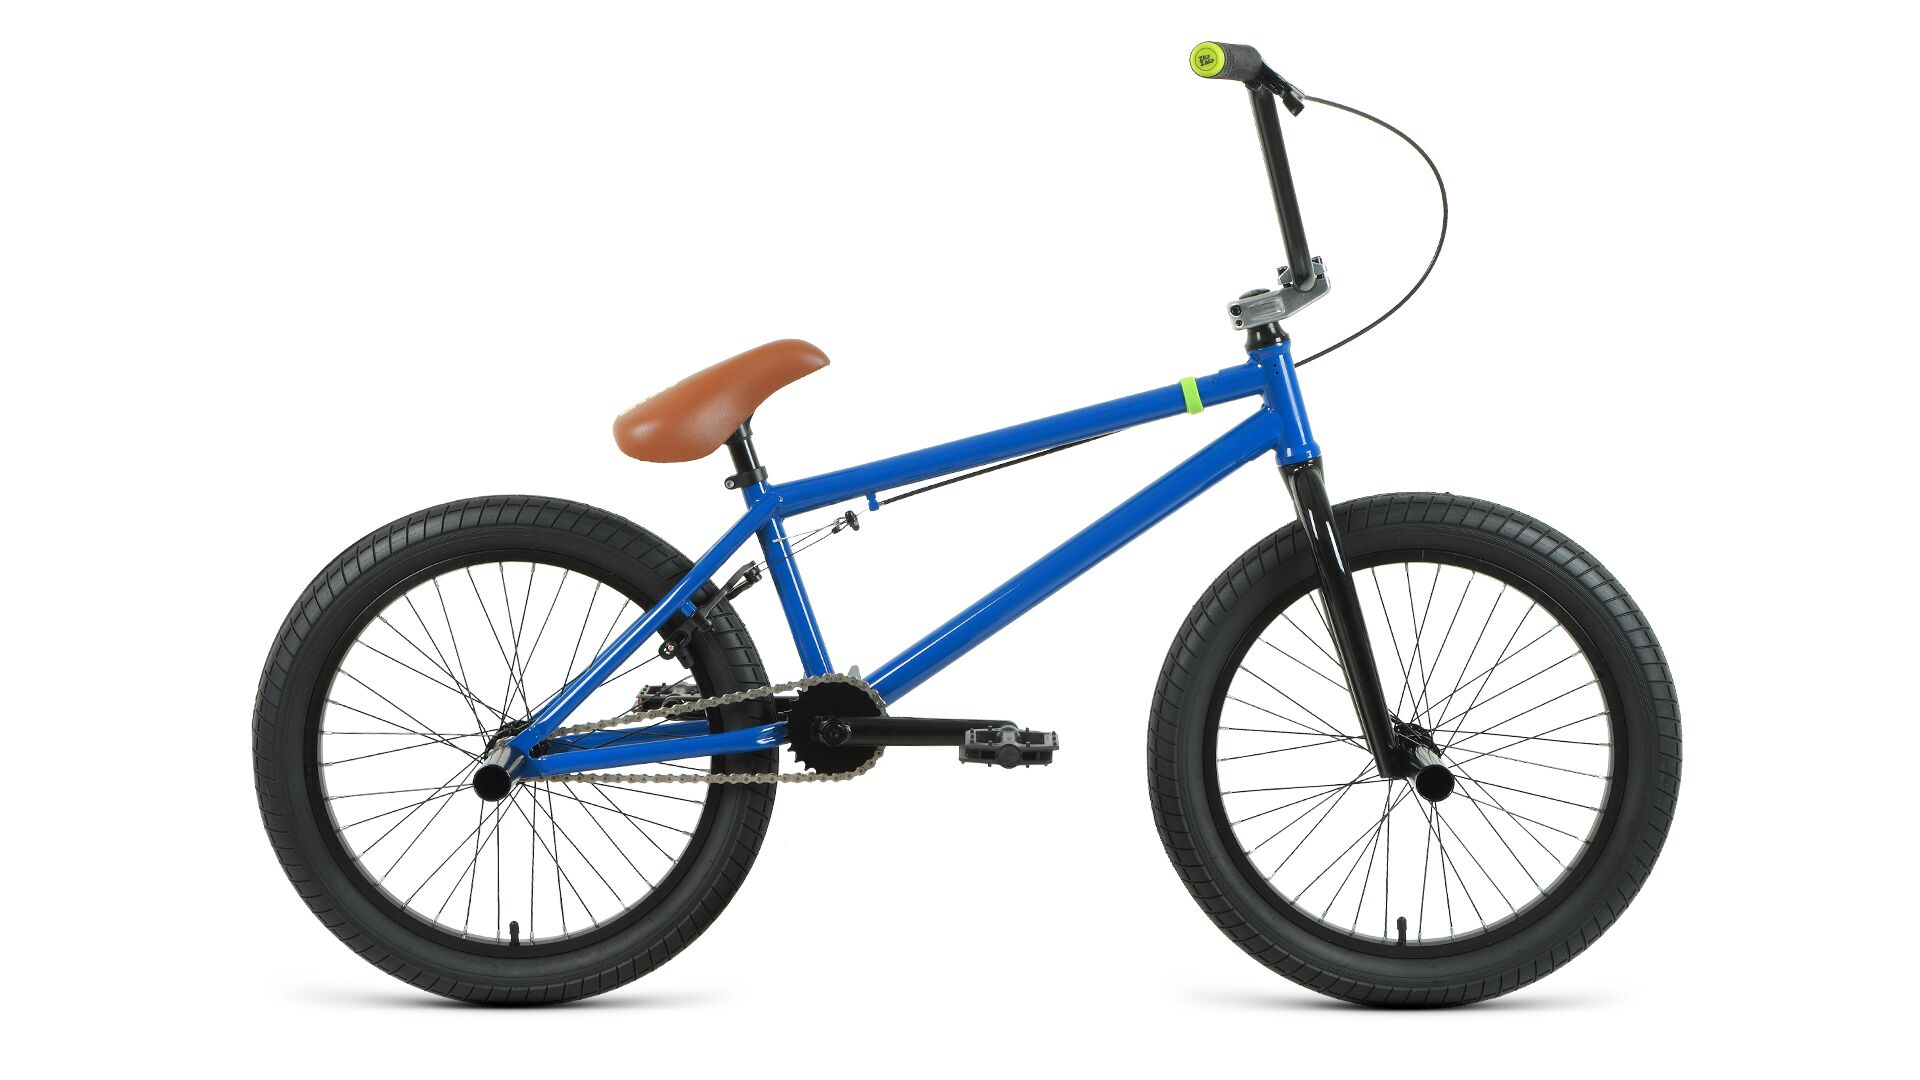 Фото выбрать и купить велосипед велосипед forward zigzag 20 (2021) синий, размер 20,75" со склада в СПб - большой выбор для взрослого и для детей, велосипед forward zigzag 20 (2021) синий, размер 20,75" велосипеды для трюков стрит или дерт в наличии - интернет-магазин Мастерская Тимура